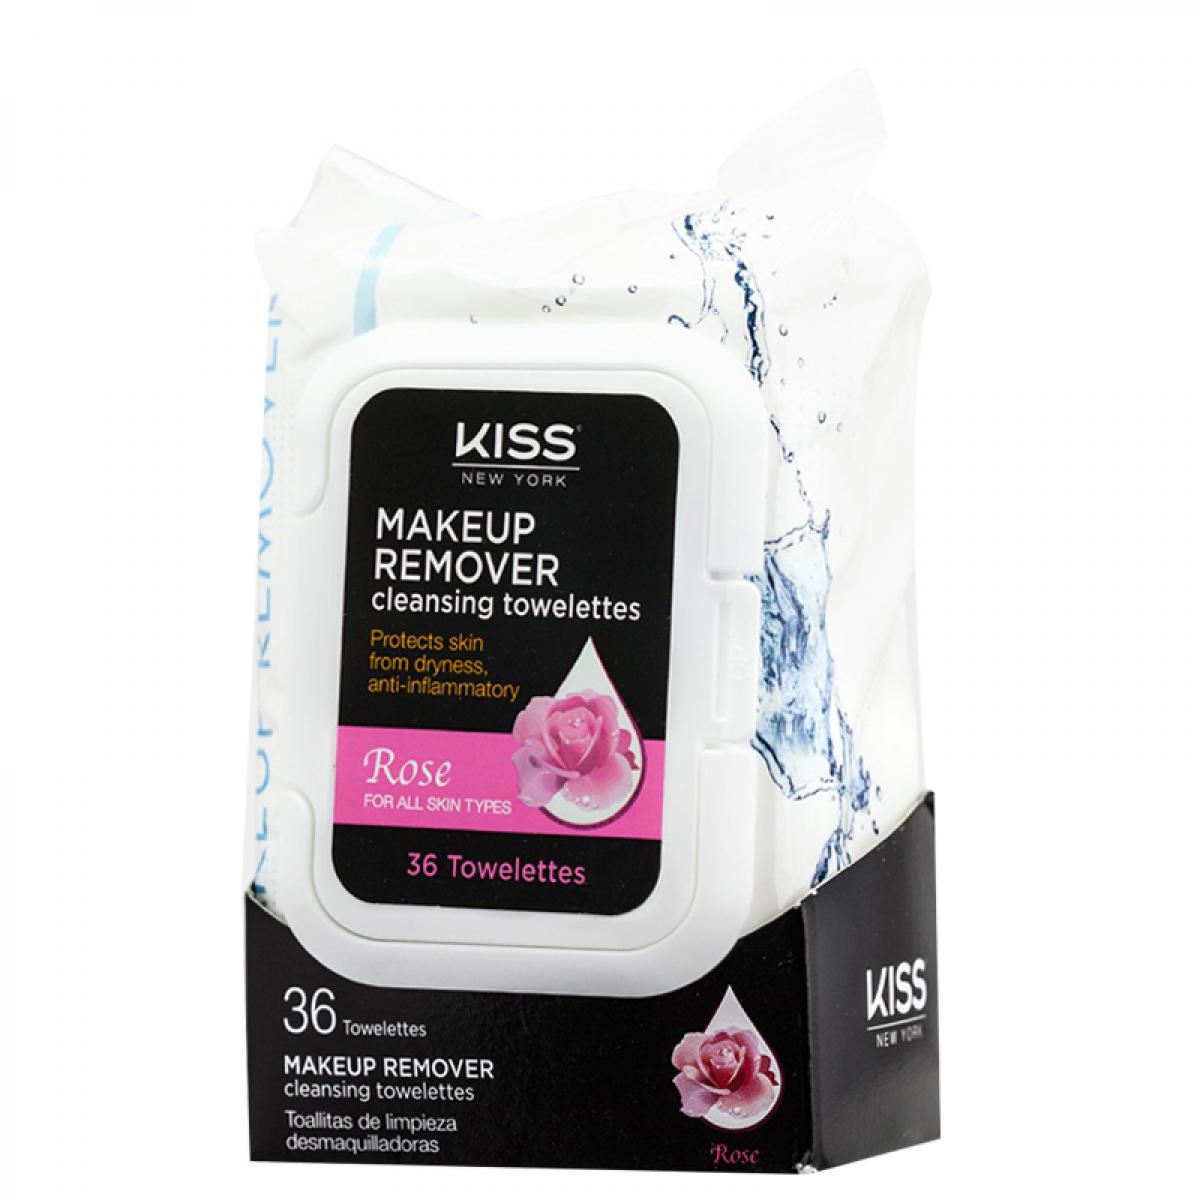 دستمال مرطوب پاک کننده آرایش حاوی عصاره رز 36 عددی - Kiss Makeup Remover Cleansing Towelettes Rose 36 Pieces